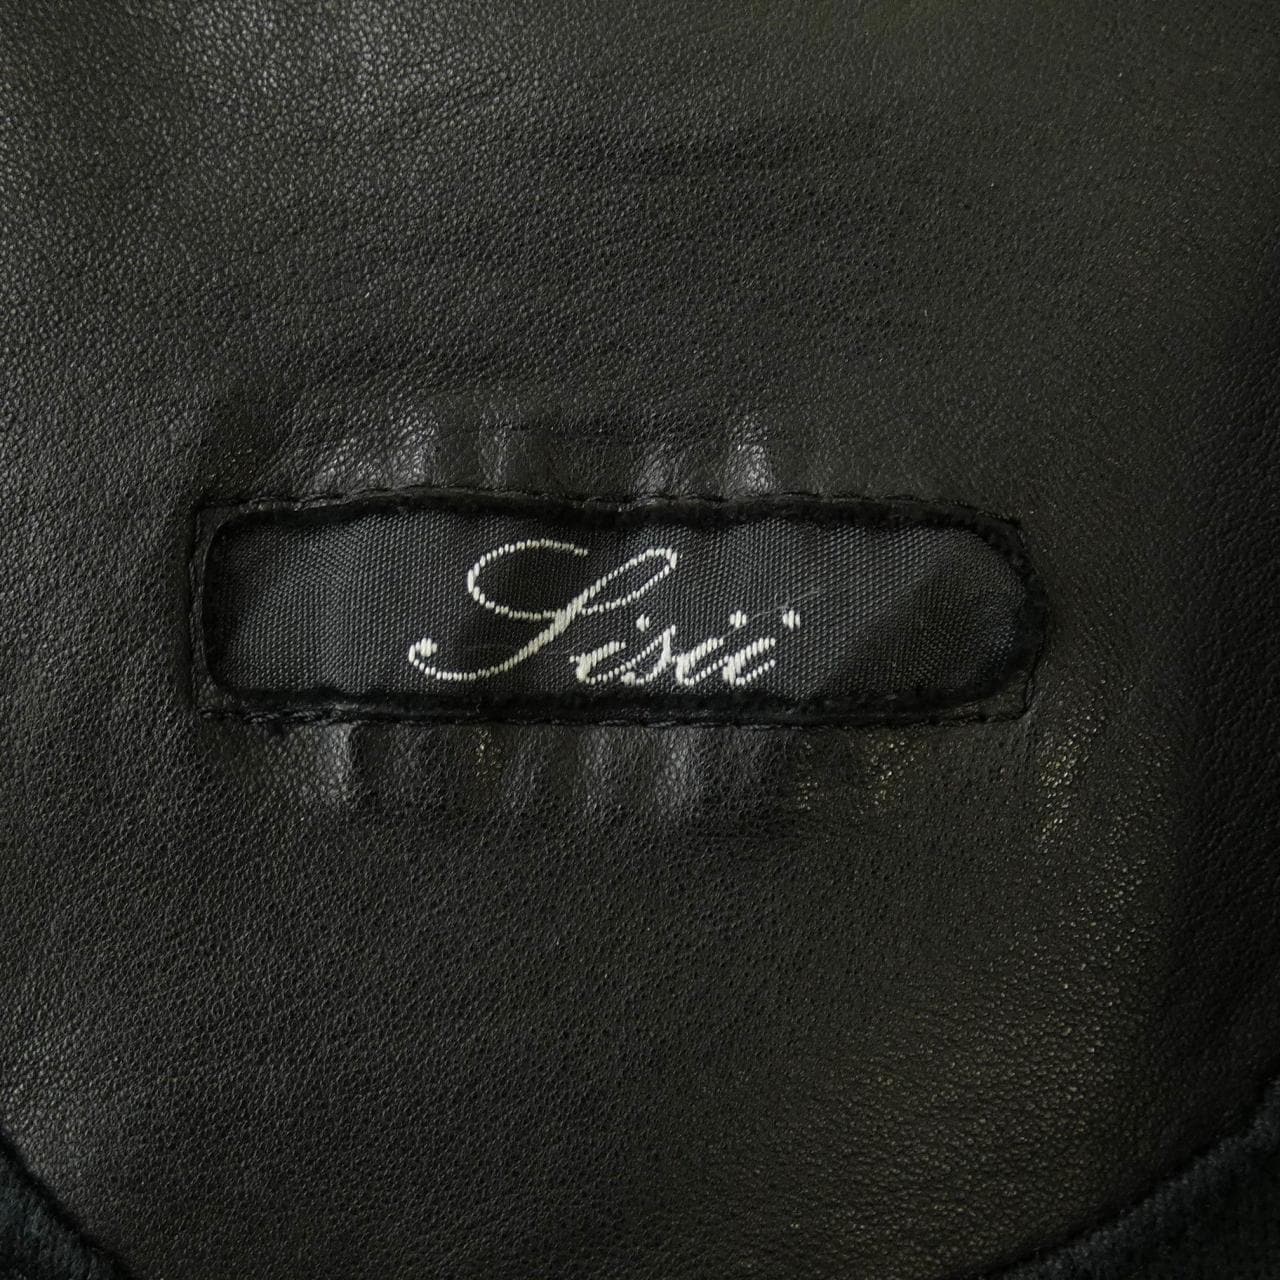 Sissi sisii leather jacket